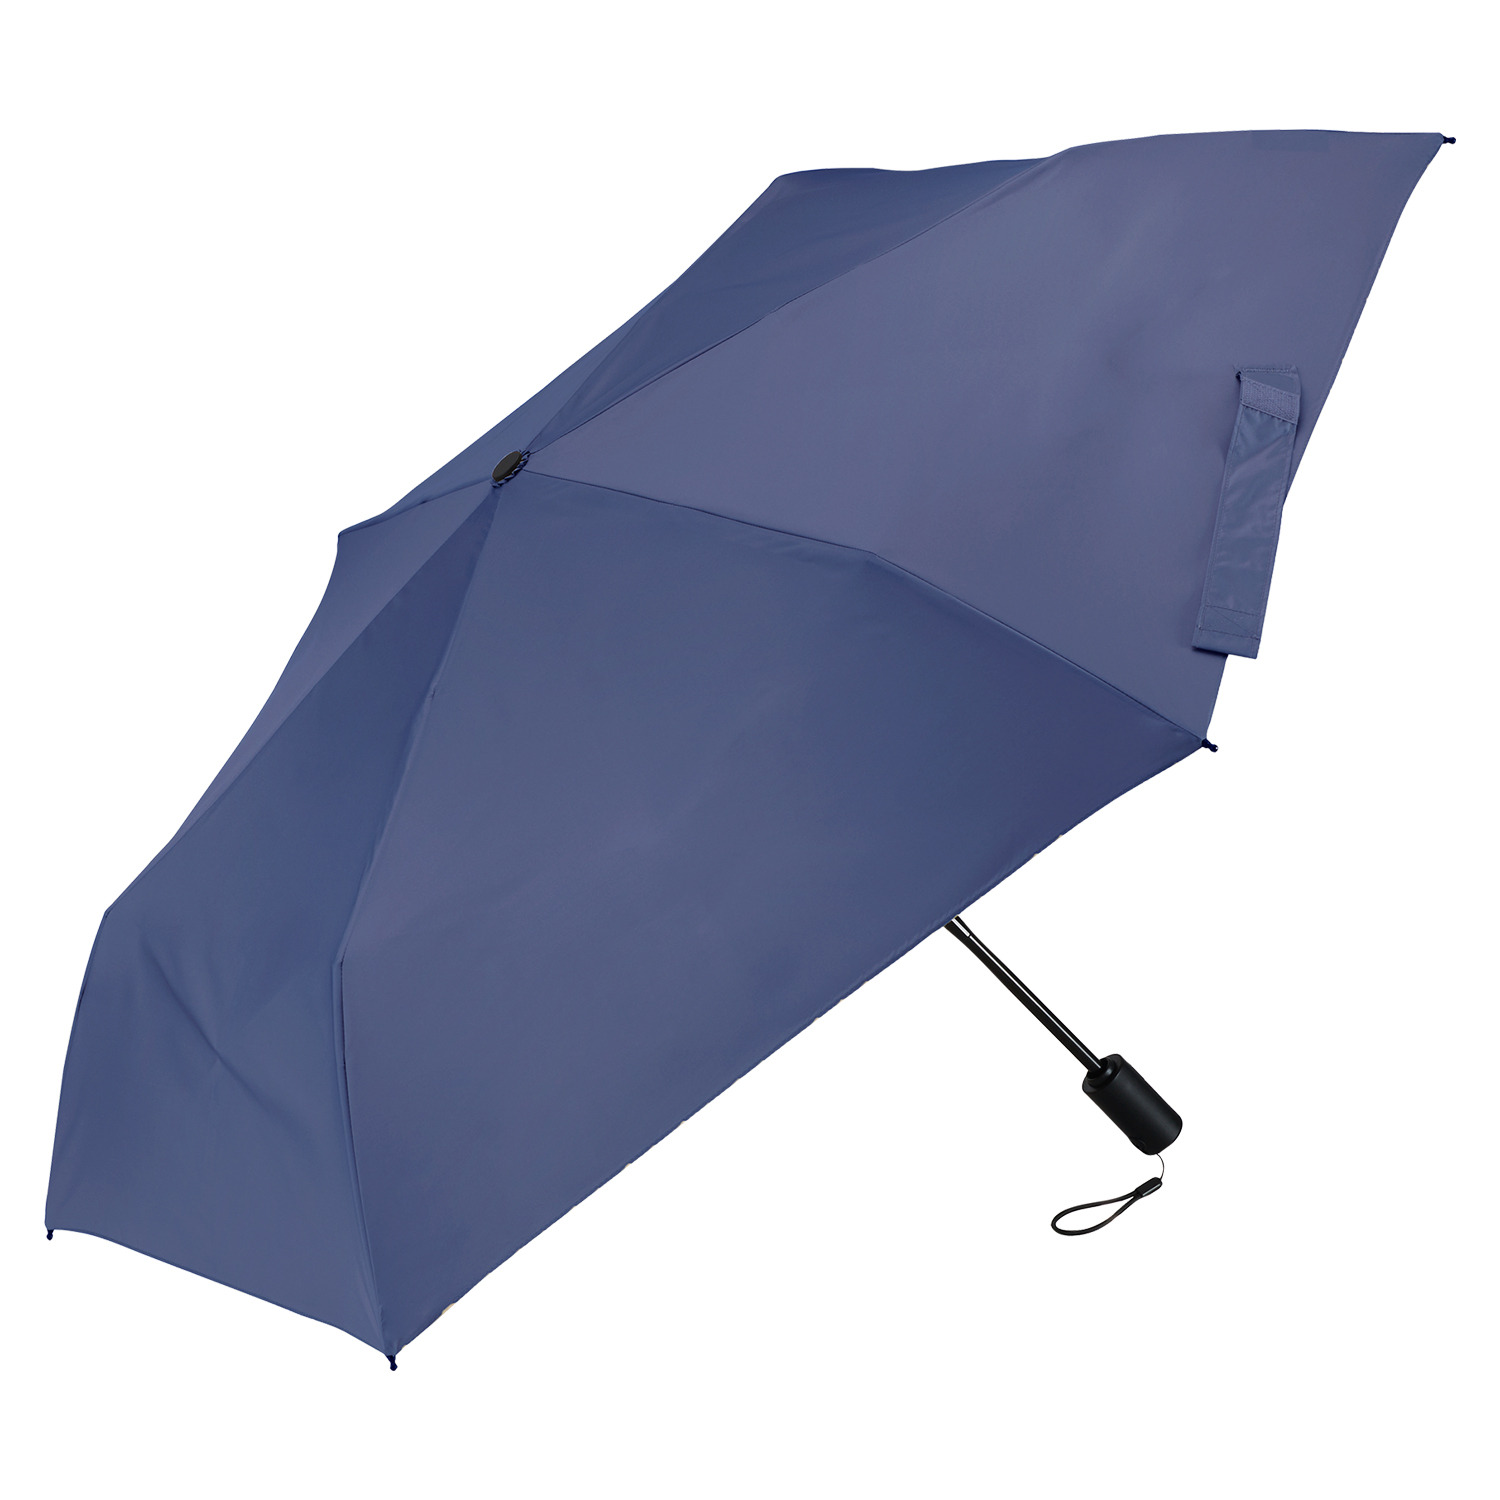 ウォーターフロント “クイックシャット” 自動開閉折りたたみ傘